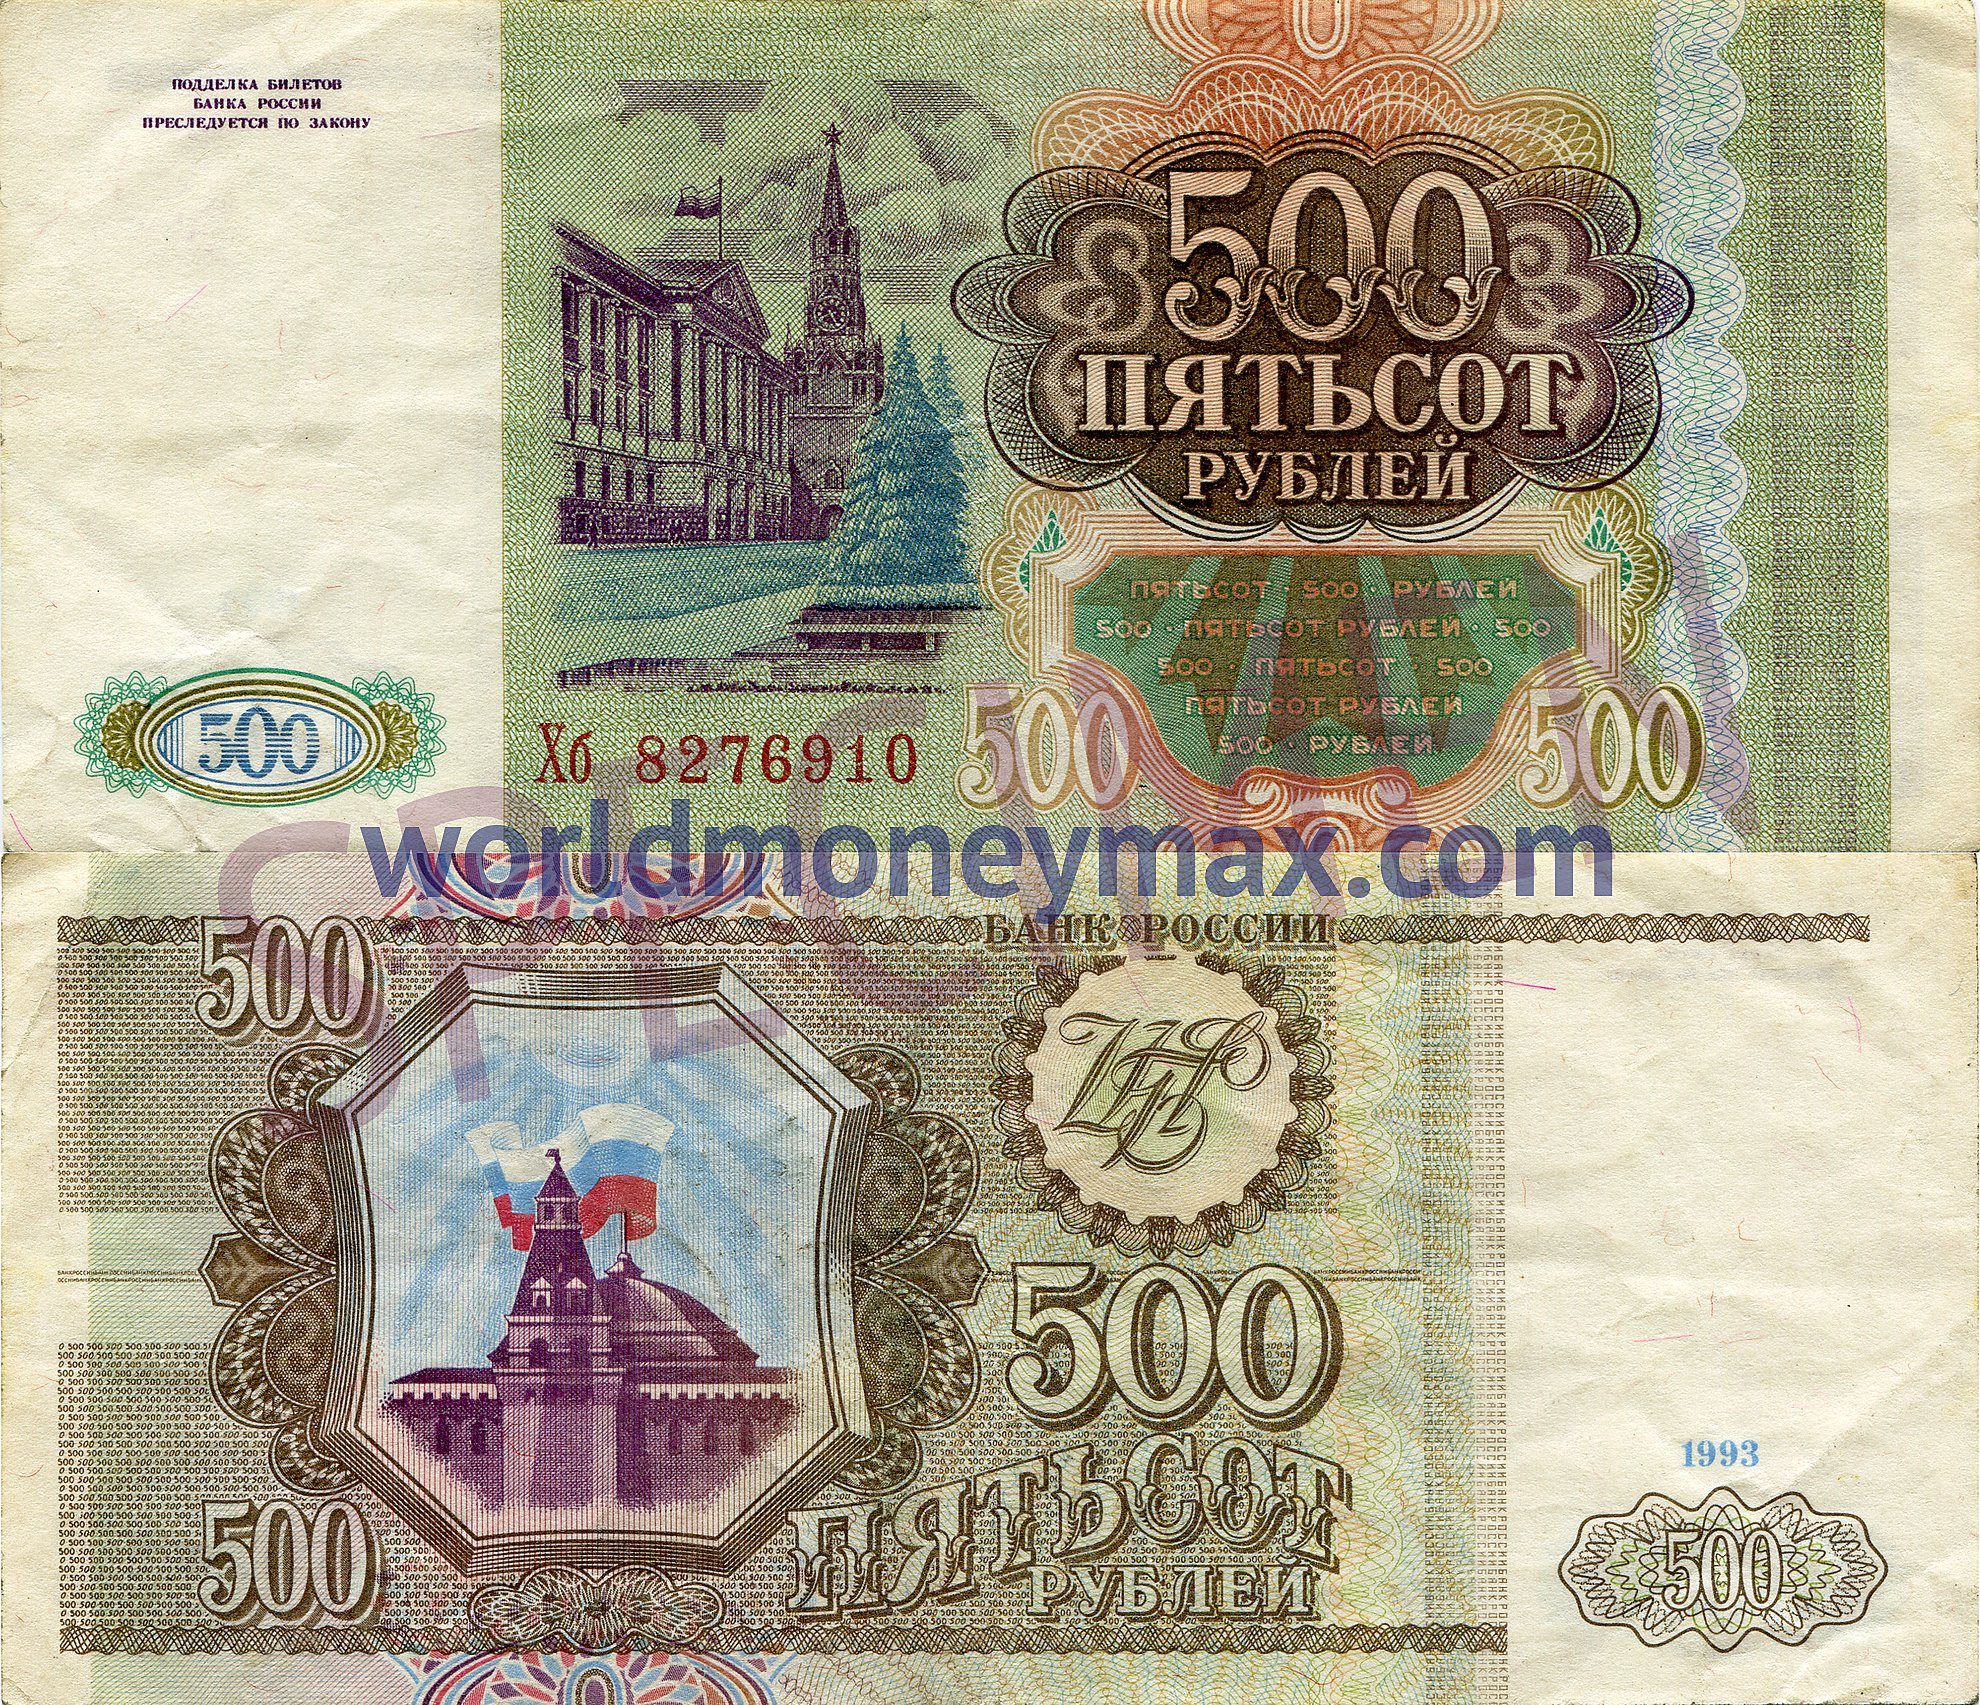 500 российских рублей. 500 Рублей 1993. Купюра 500 рублей 1993 года. Пятьсот рублей 1993 года. Банкнота 500 рублей 1993.